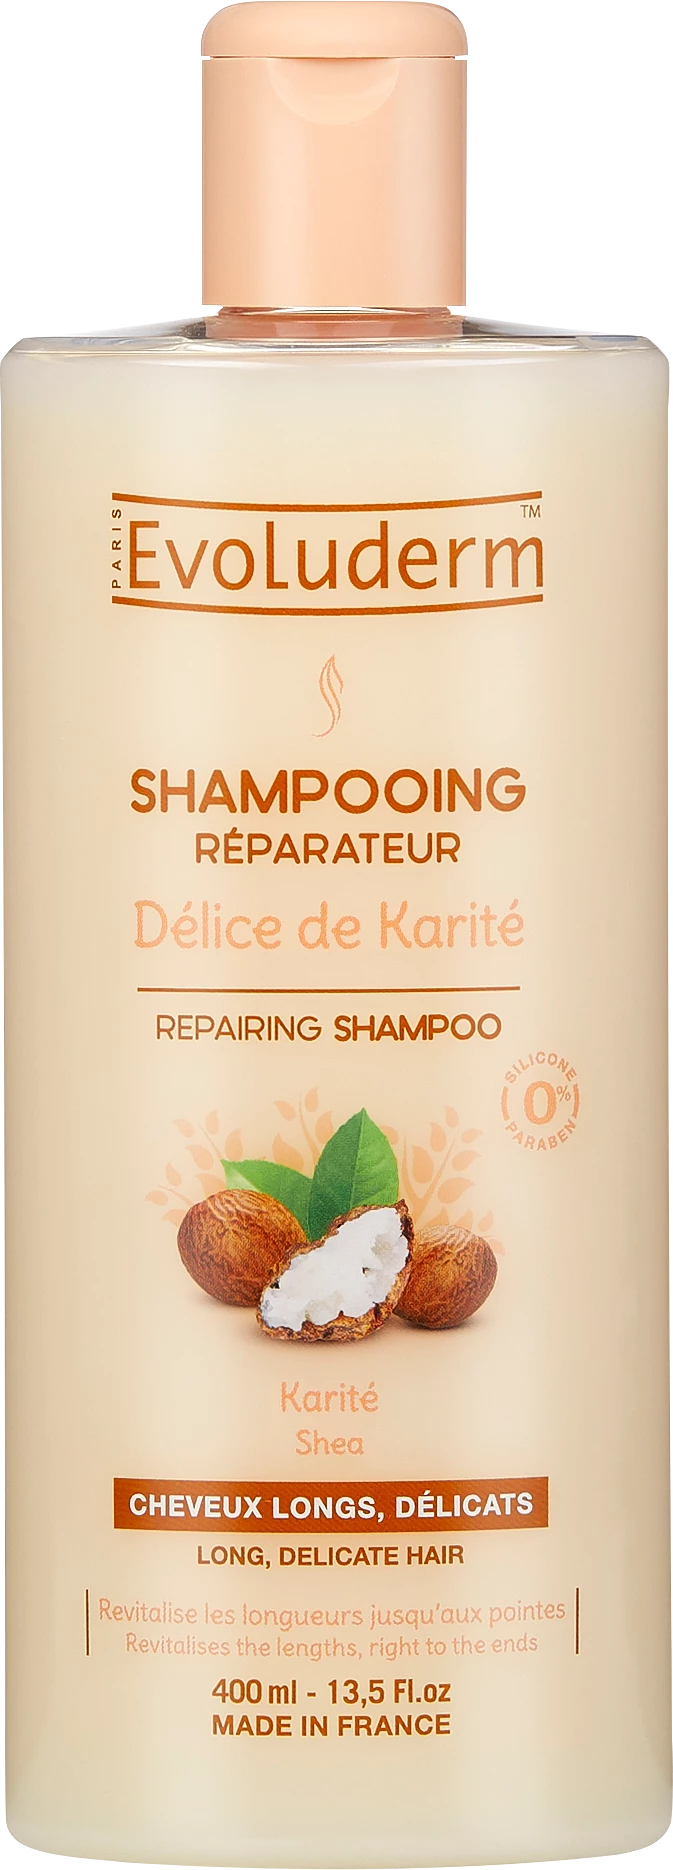 Shampoo Délice Karité, 400ml - EVOLUDERM